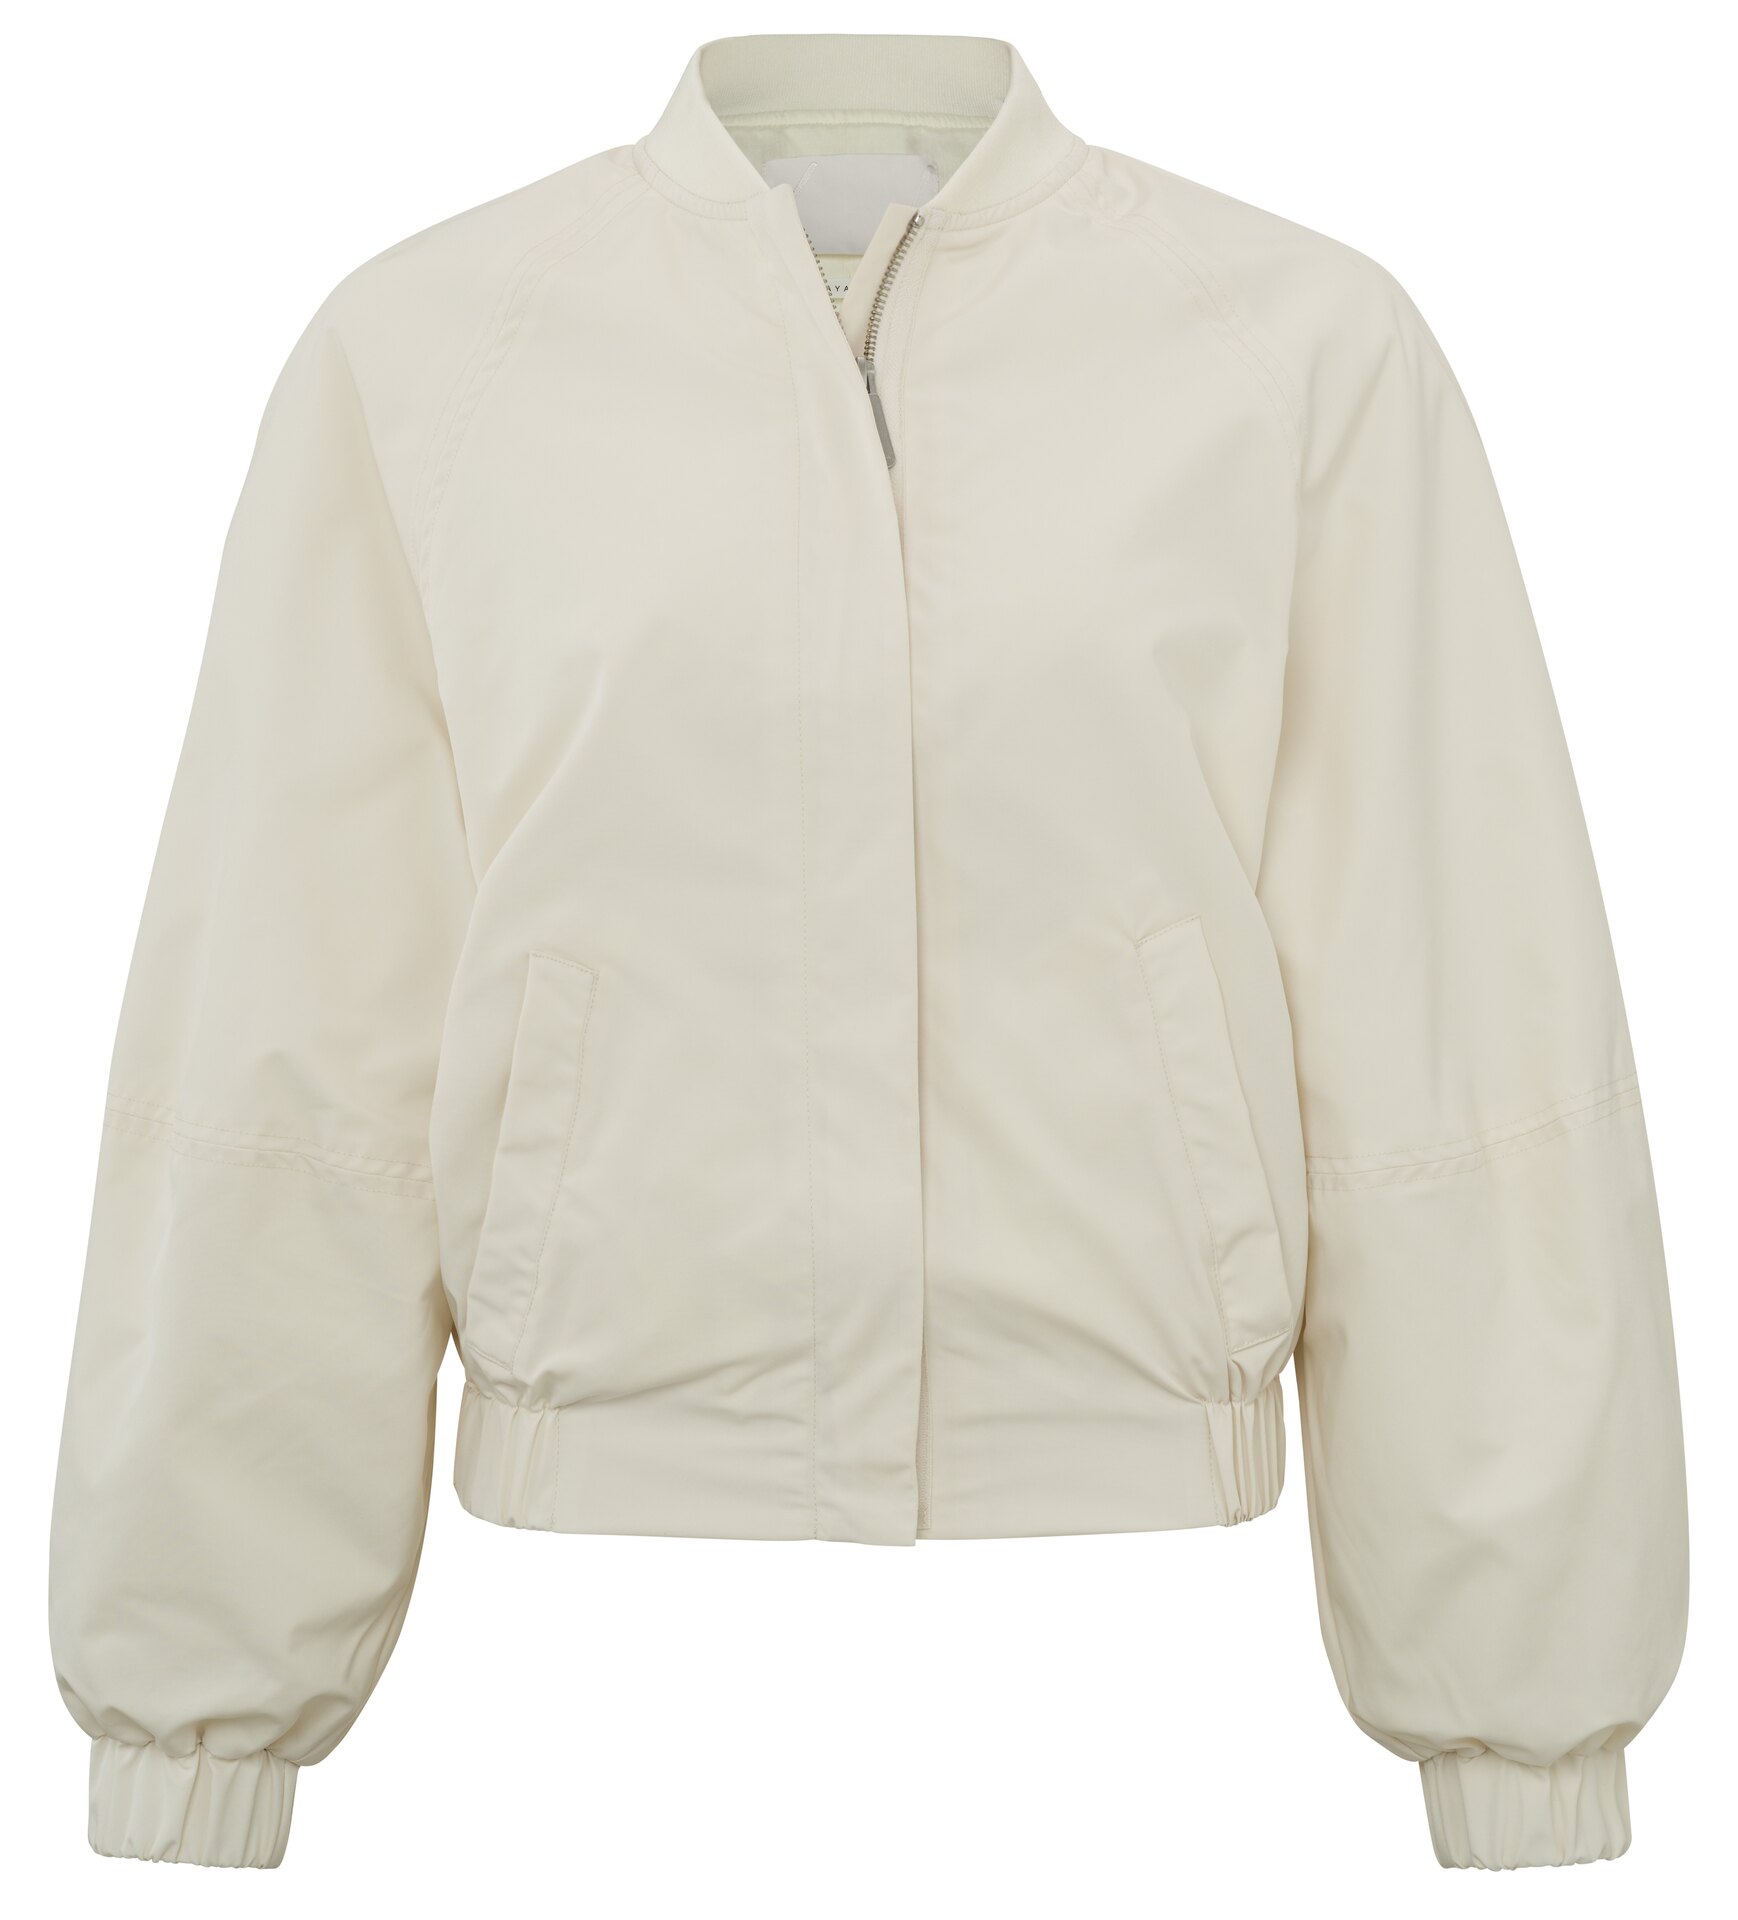 YAYA Bomber Jas | Bomber Jacket Oversized Puffed Sleeves Wool White